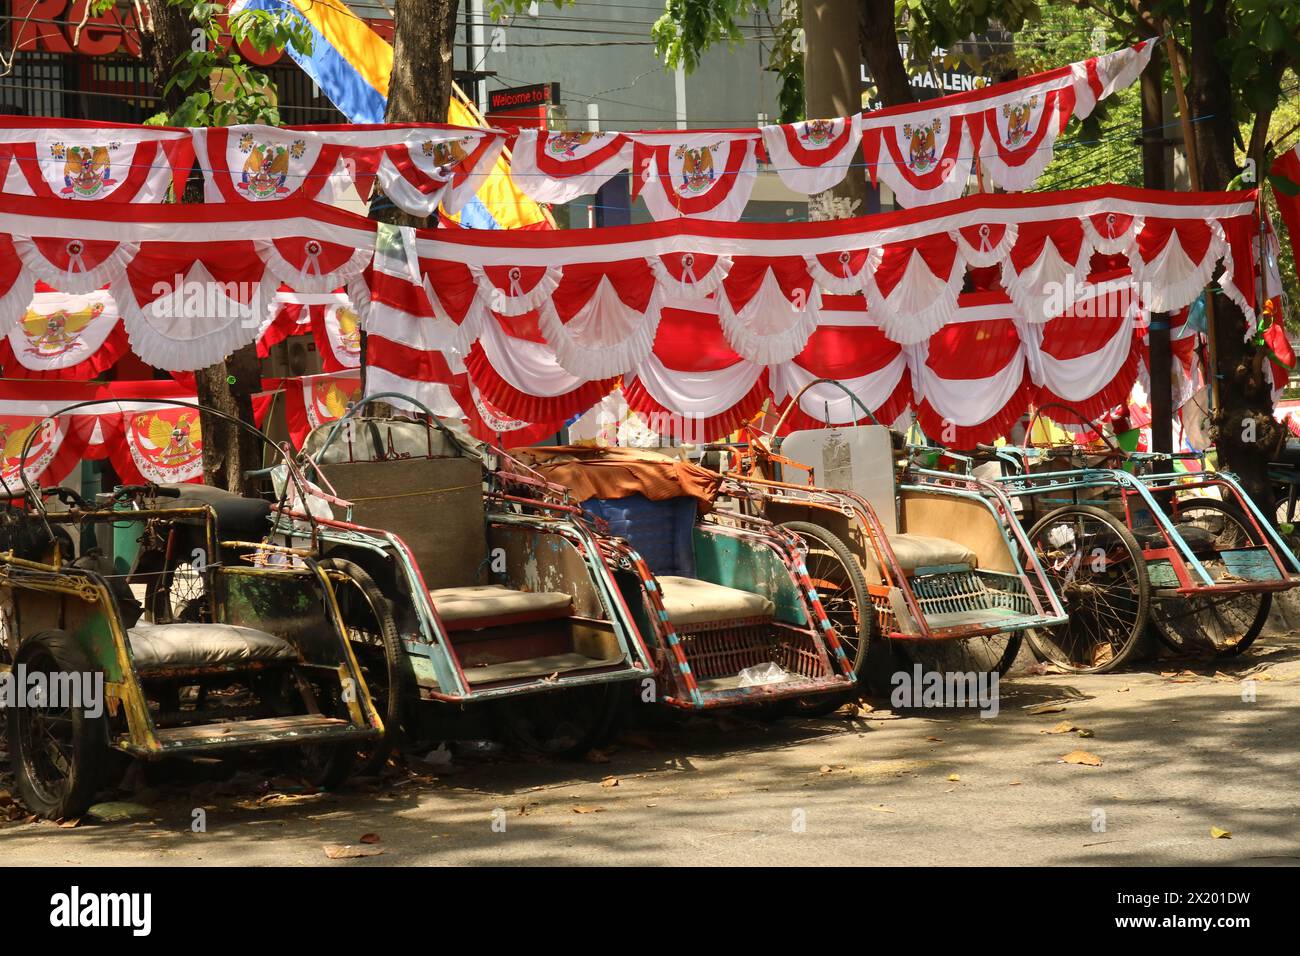 Les vendeurs de drapeaux vendent dans une rue piétonne. Ce drapeau est généralement utilisé comme décoration lors de la commémoration du jour de l'indépendance de l'Indonésie. Banque D'Images